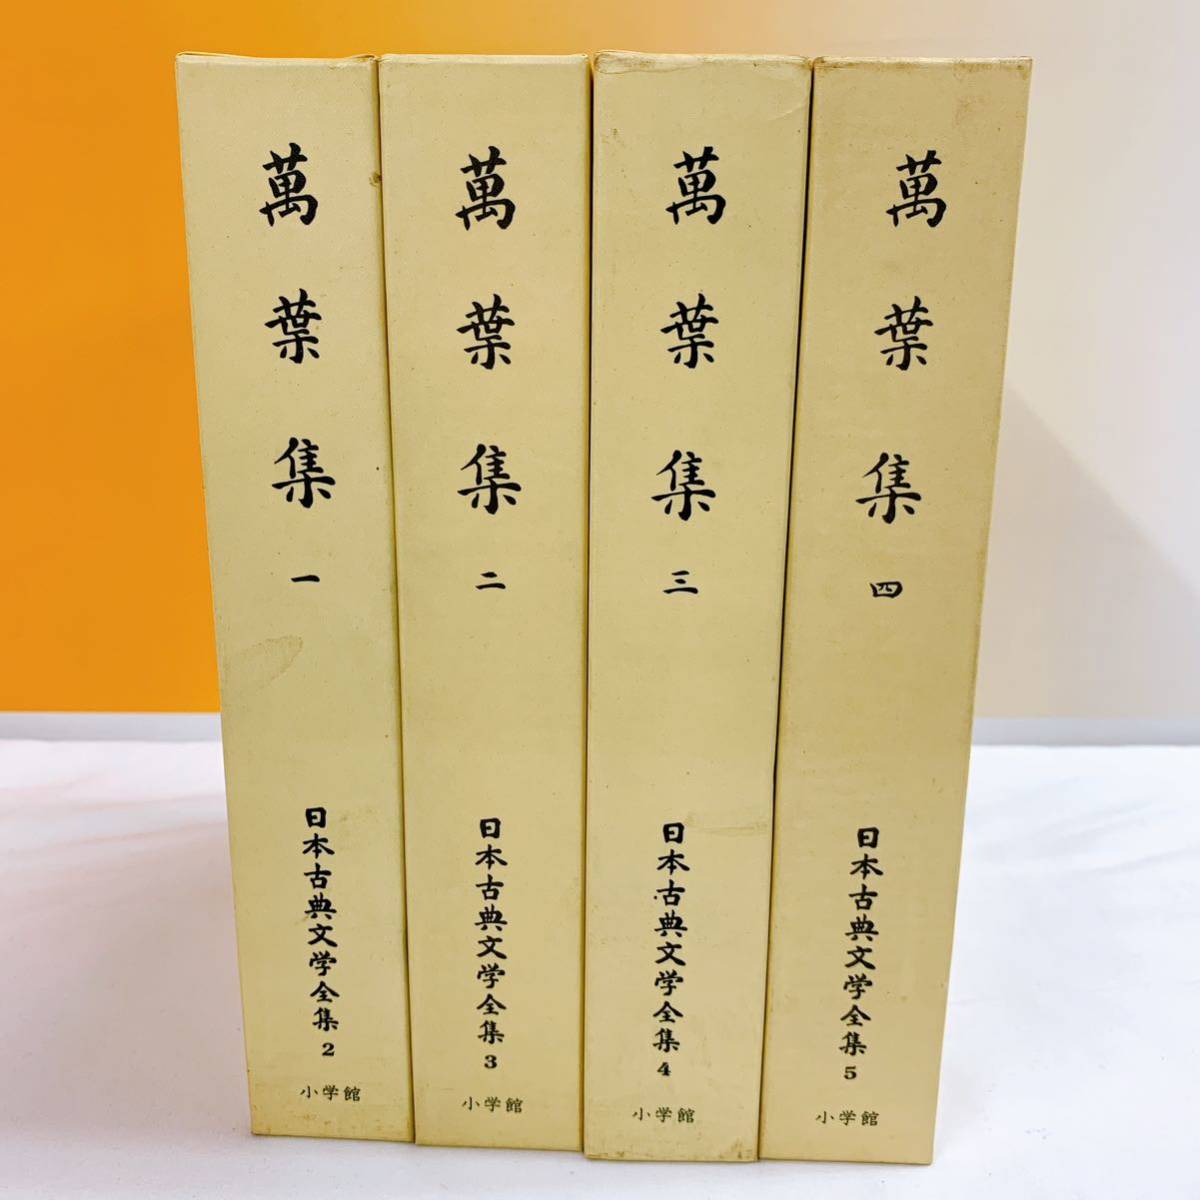 送料無料限定セール中 日本古典文学全集 rahathomedesign.com